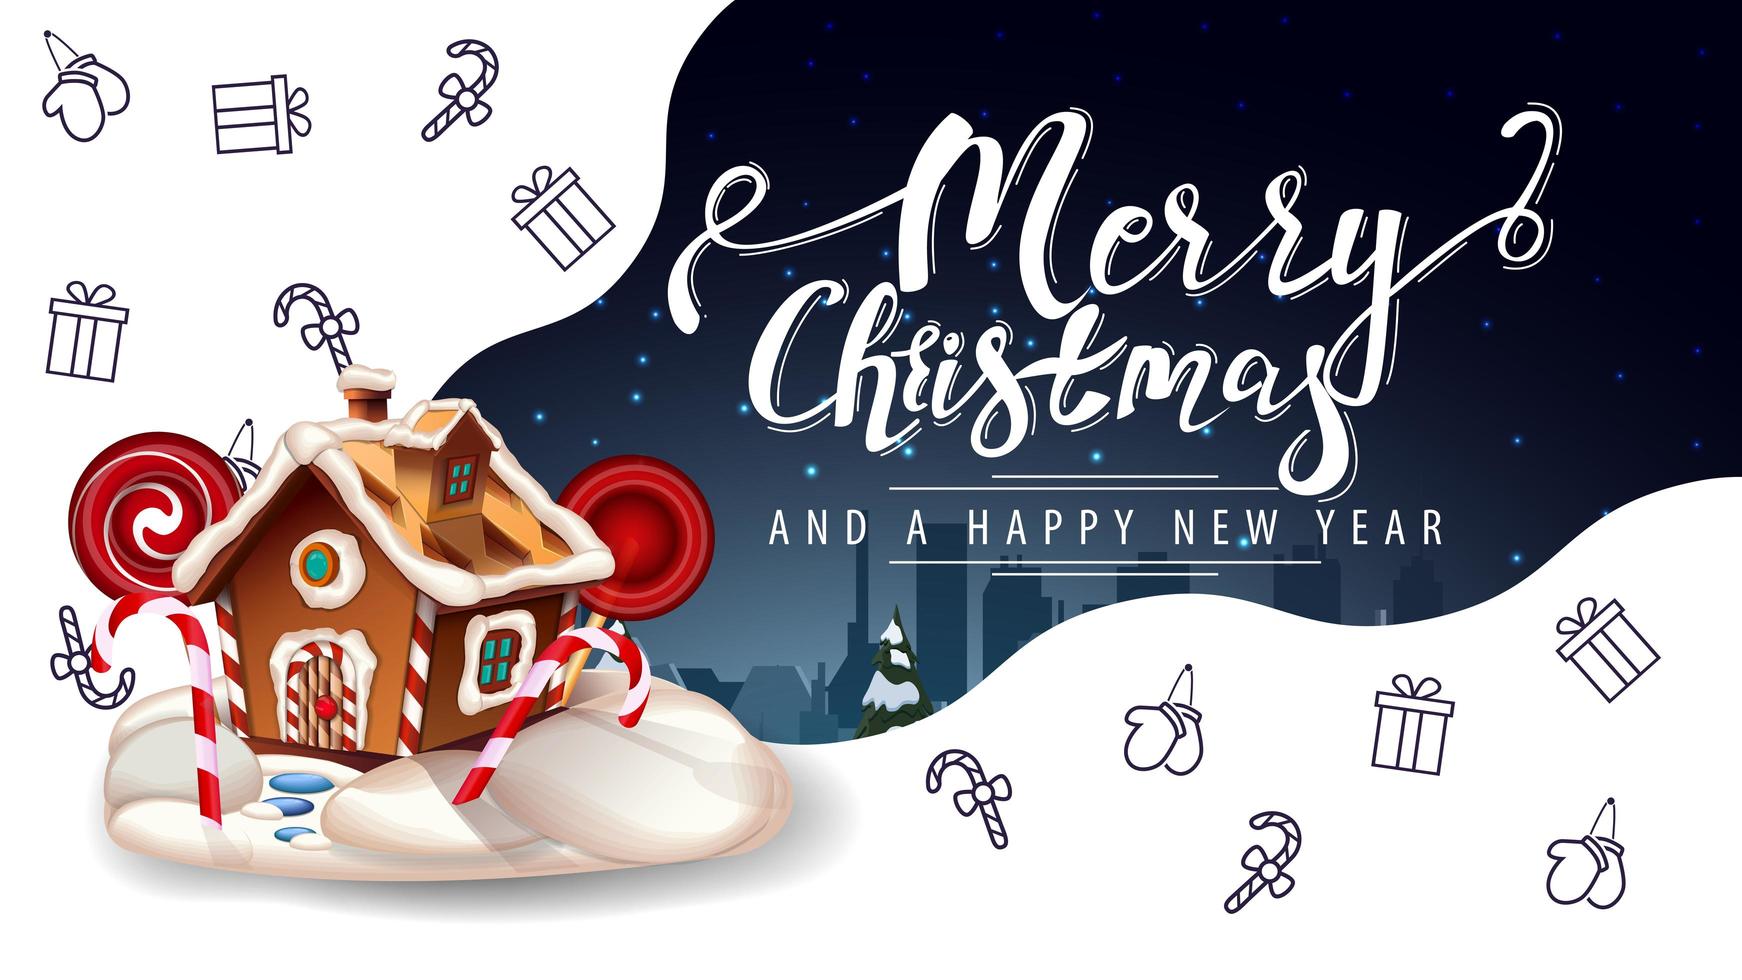 feliz navidad y próspero año nuevo, hermosa postal de felicitación blanca y azul con la casa de pan de jengibre navideña y los iconos de la línea navideña, imaginación espacial vector